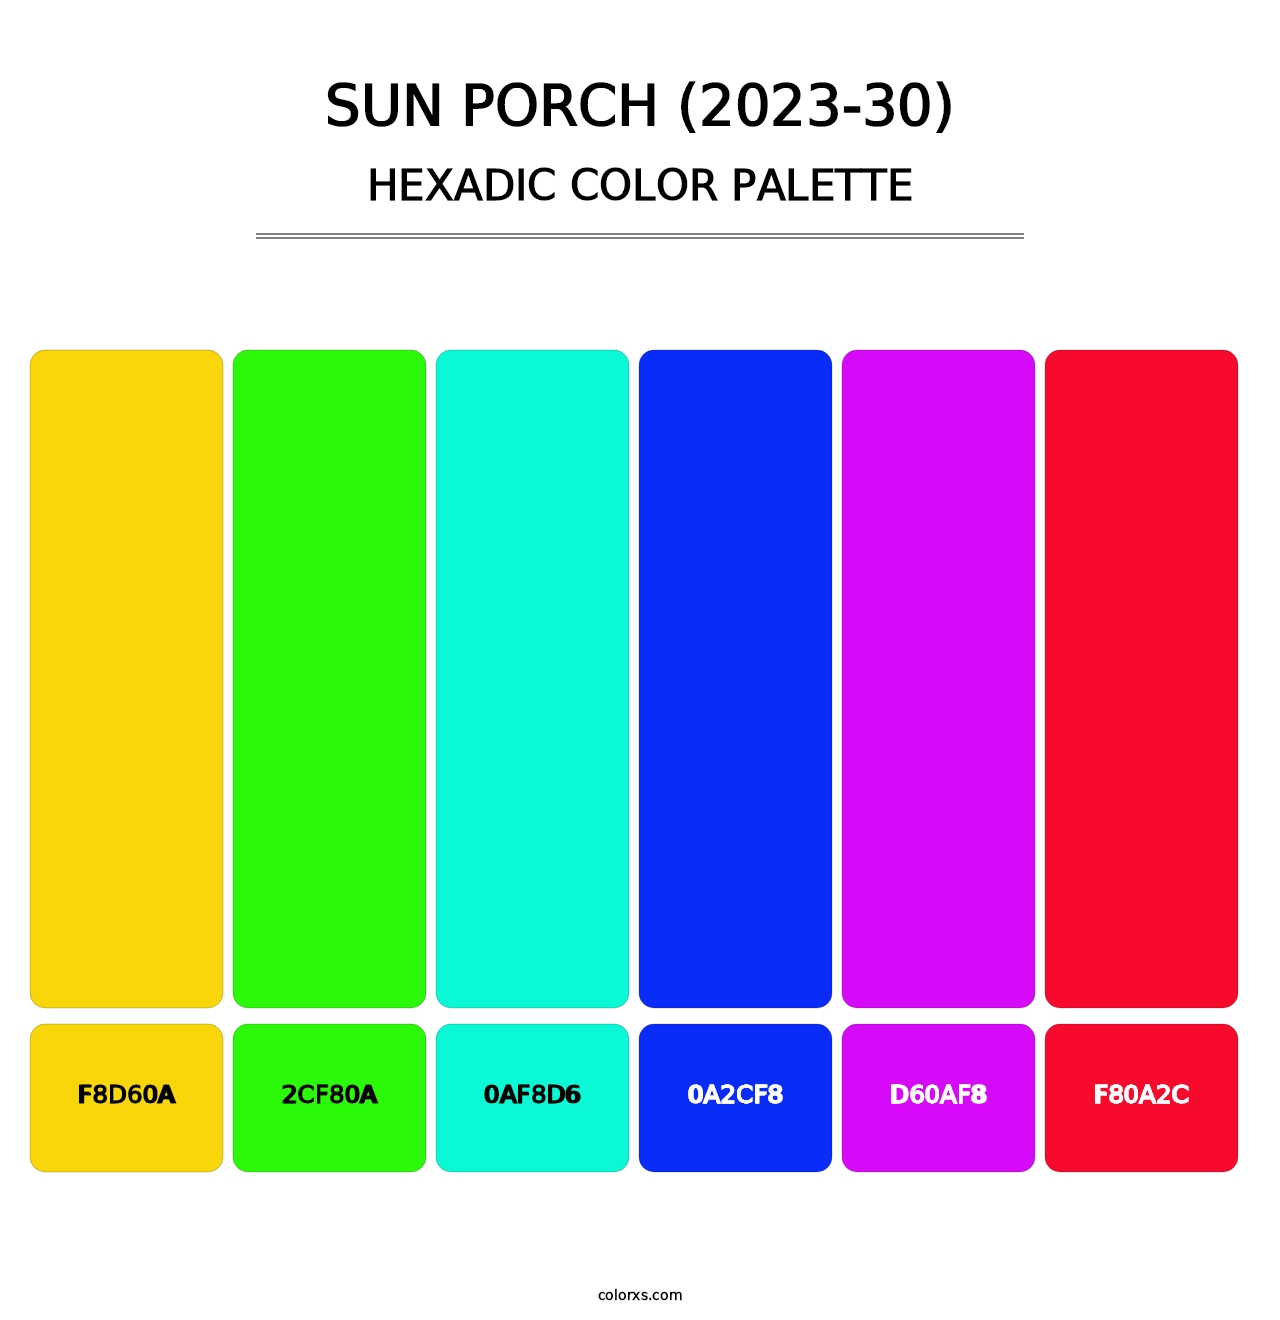 Sun Porch (2023-30) - Hexadic Color Palette